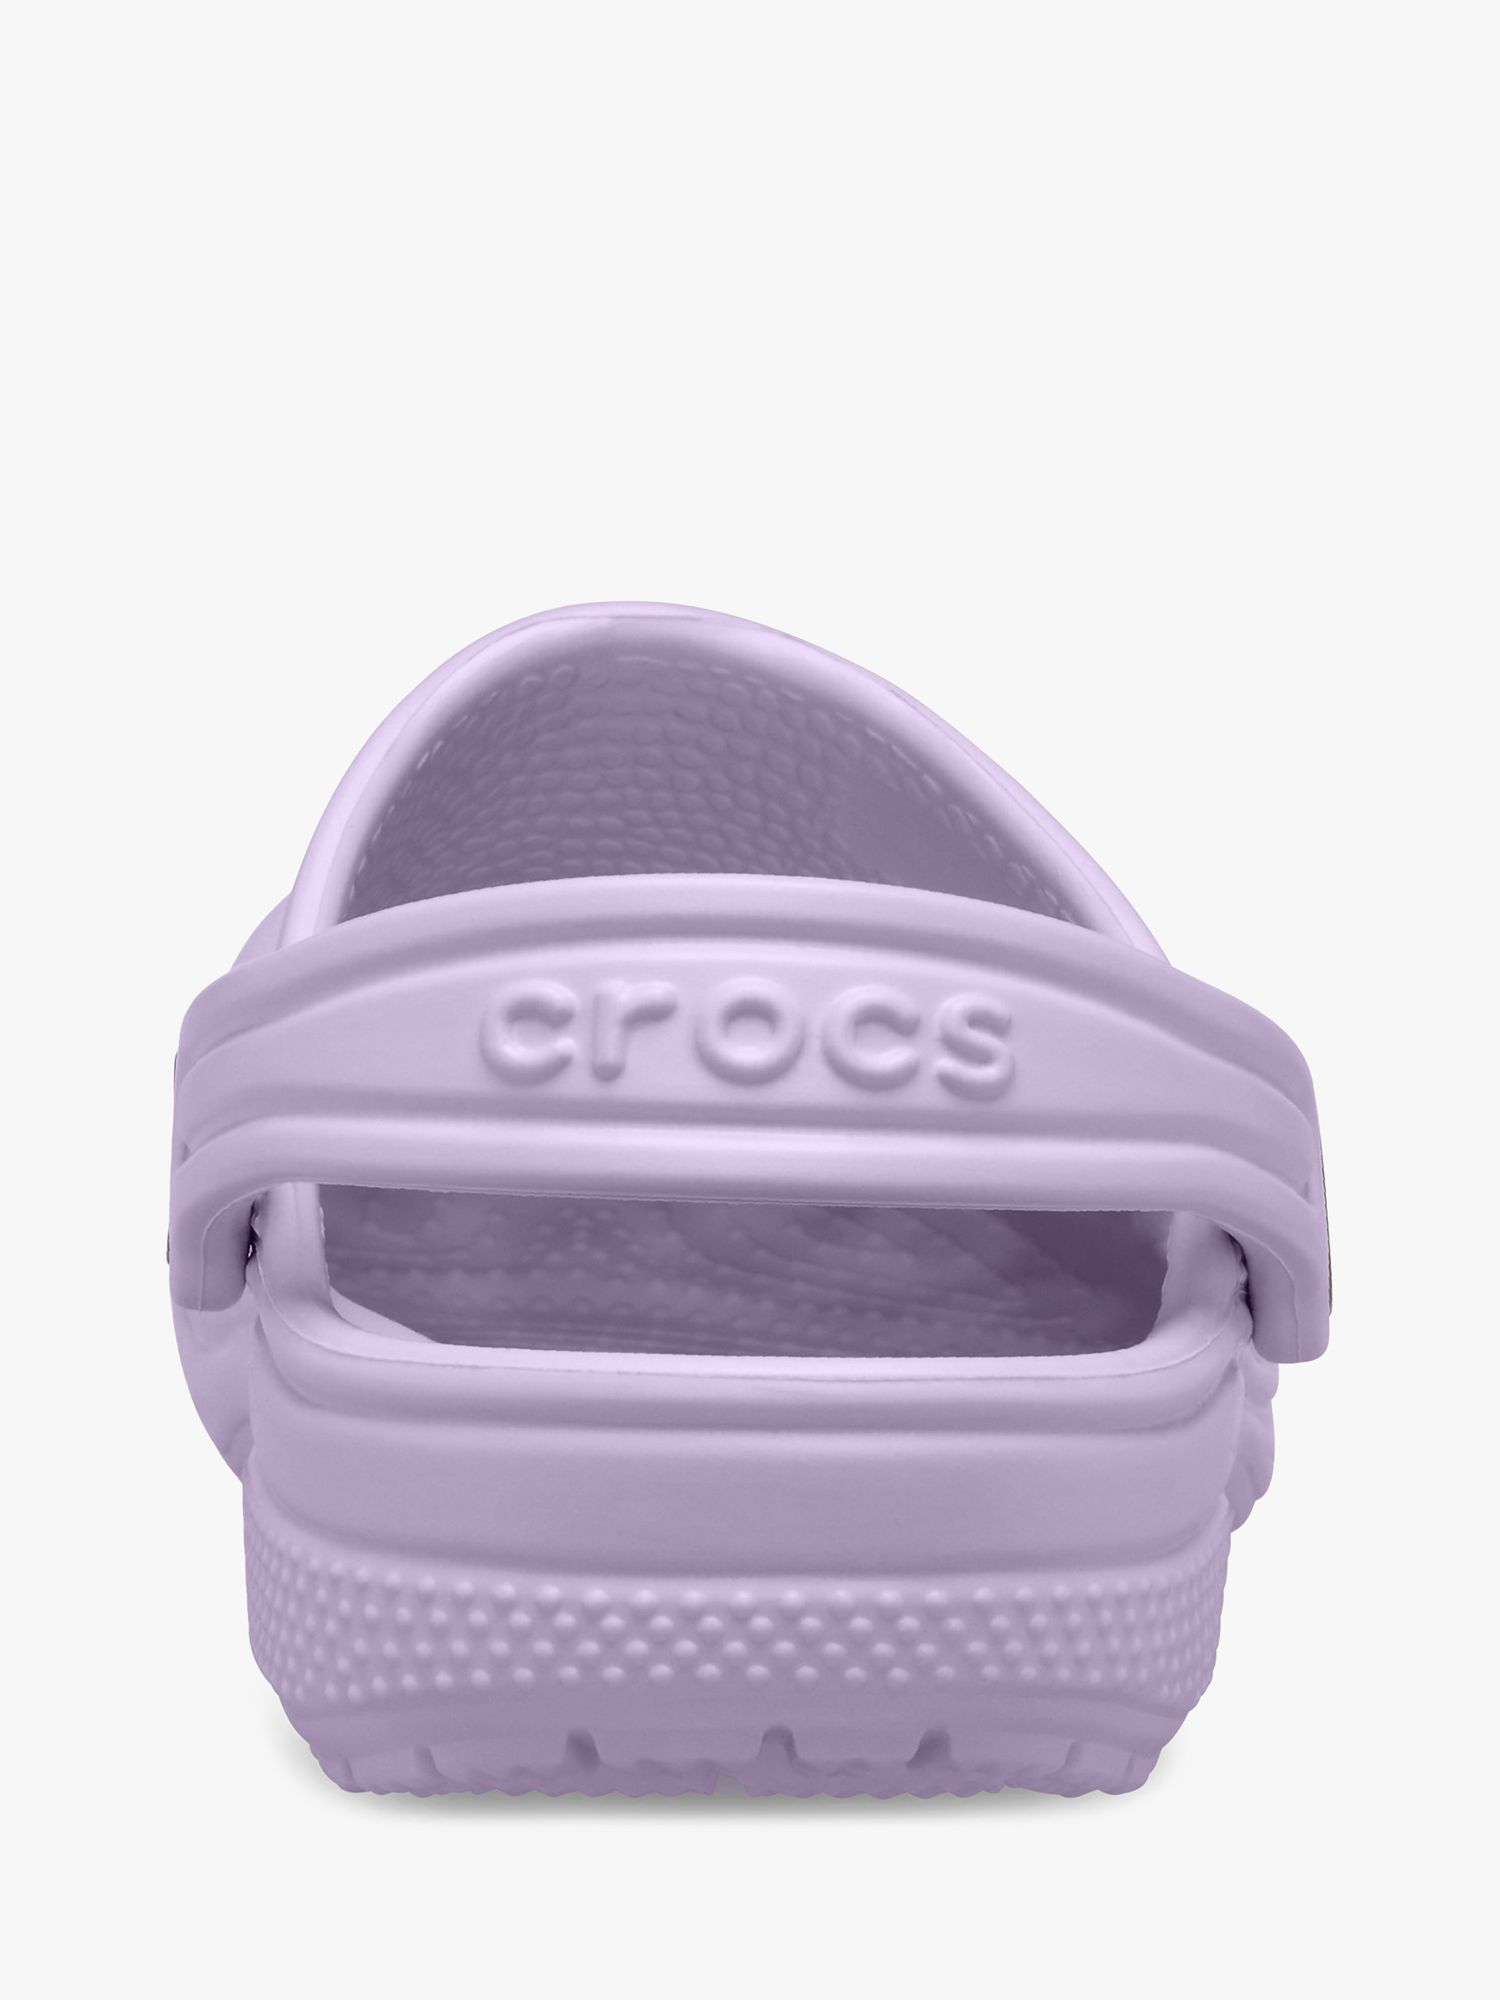 Crocs Kids' Classic Croc Clogs, Lavender, 1